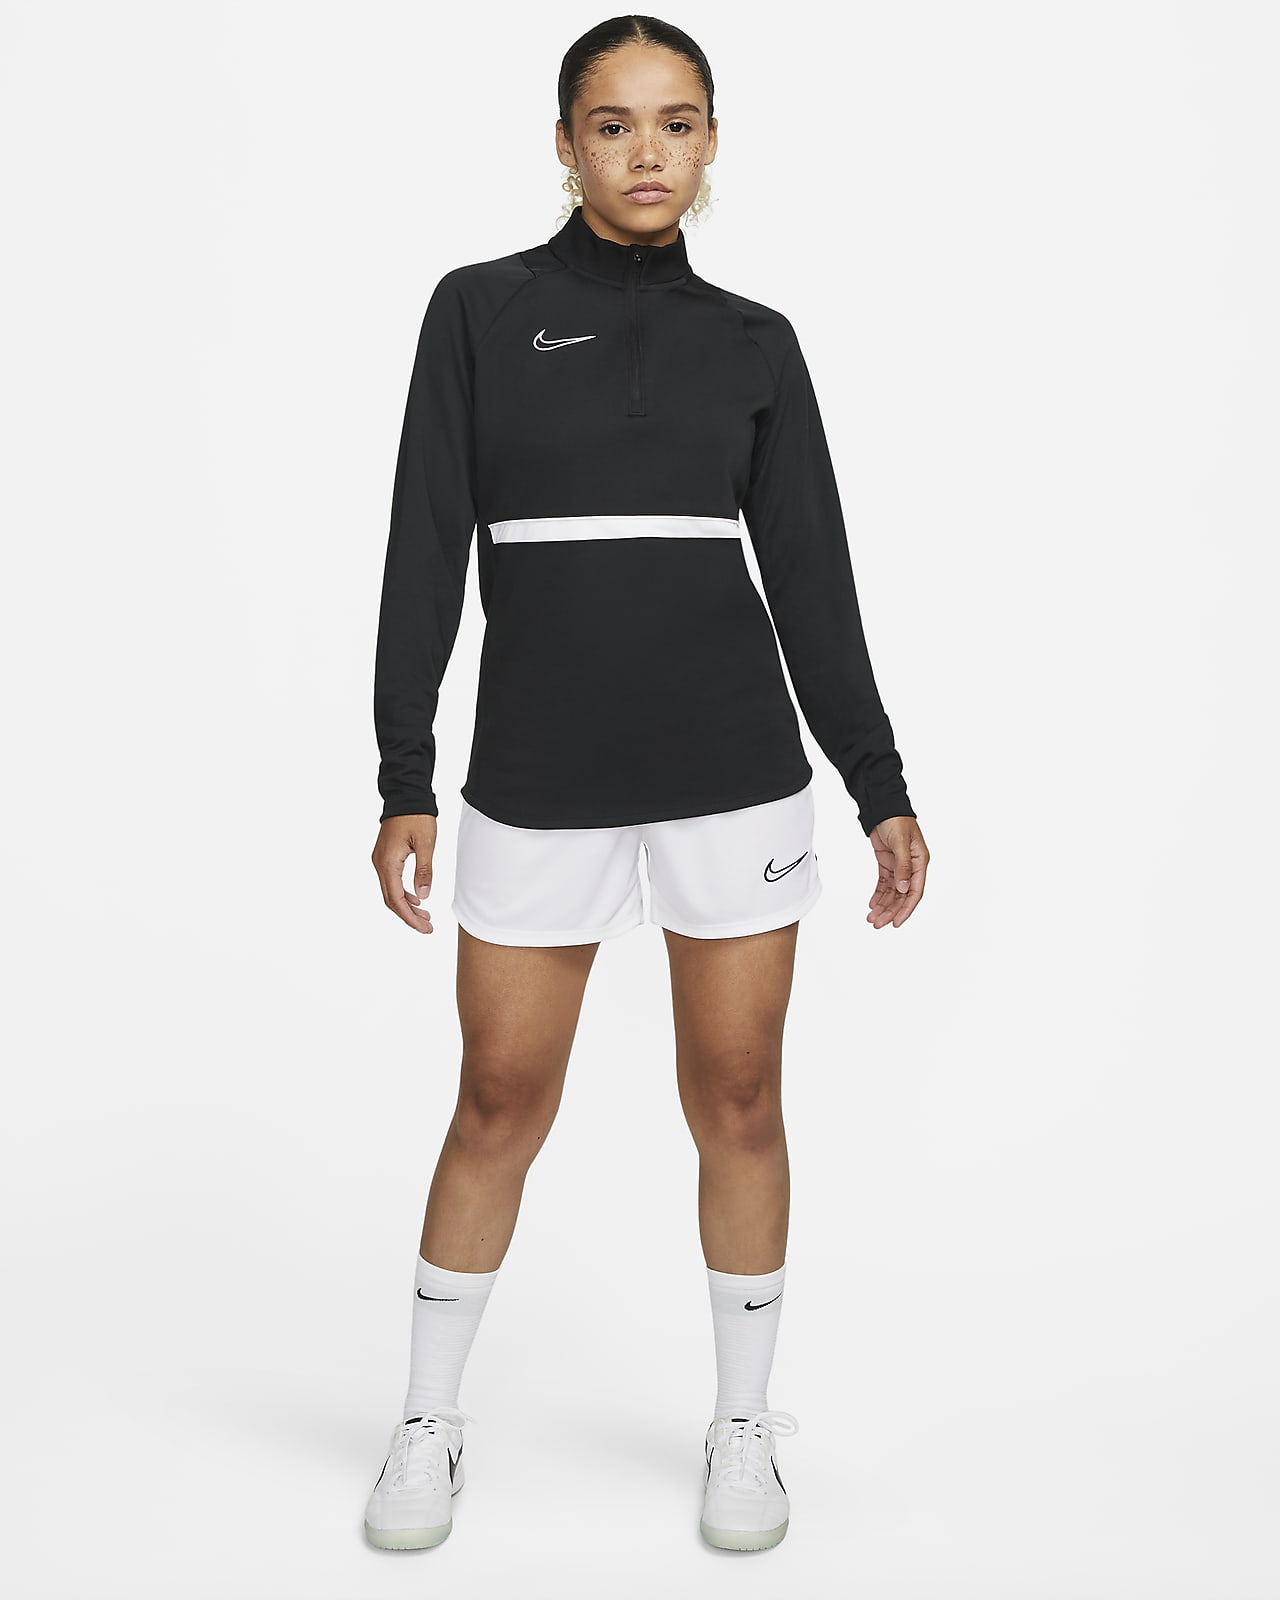 Nike Women's Academy 21 Dri-Fit Knit Pant, CV2665-010 Black/White, SM 